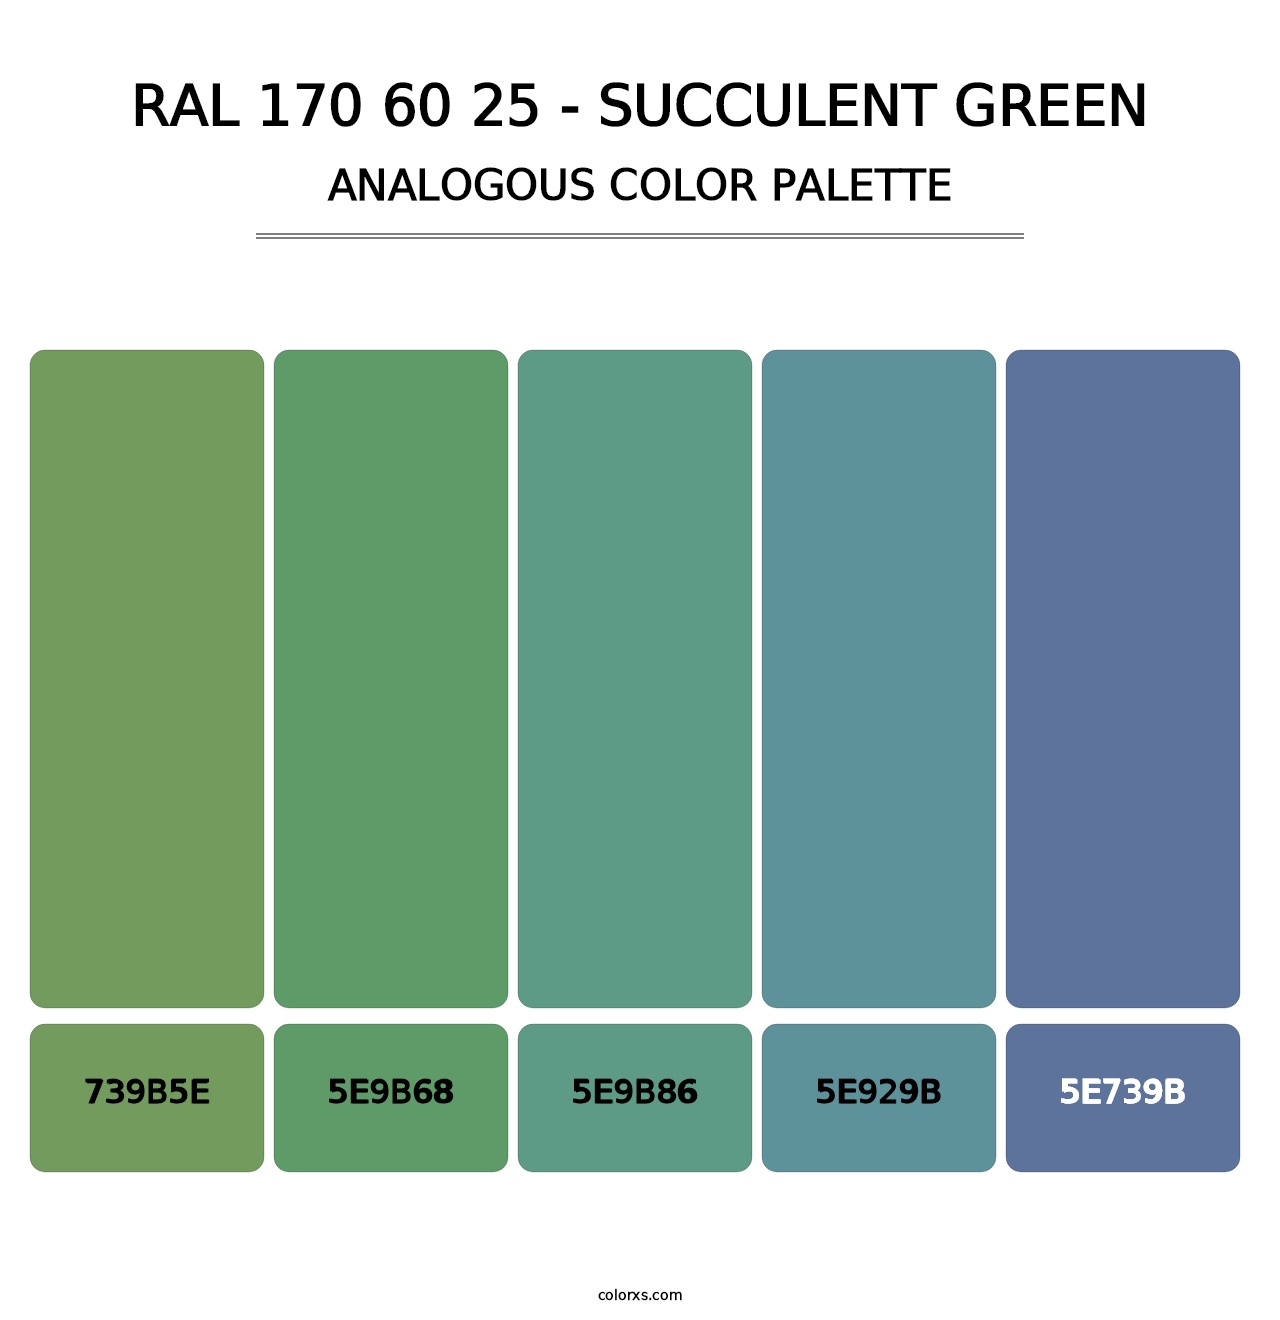 RAL 170 60 25 - Succulent Green - Analogous Color Palette